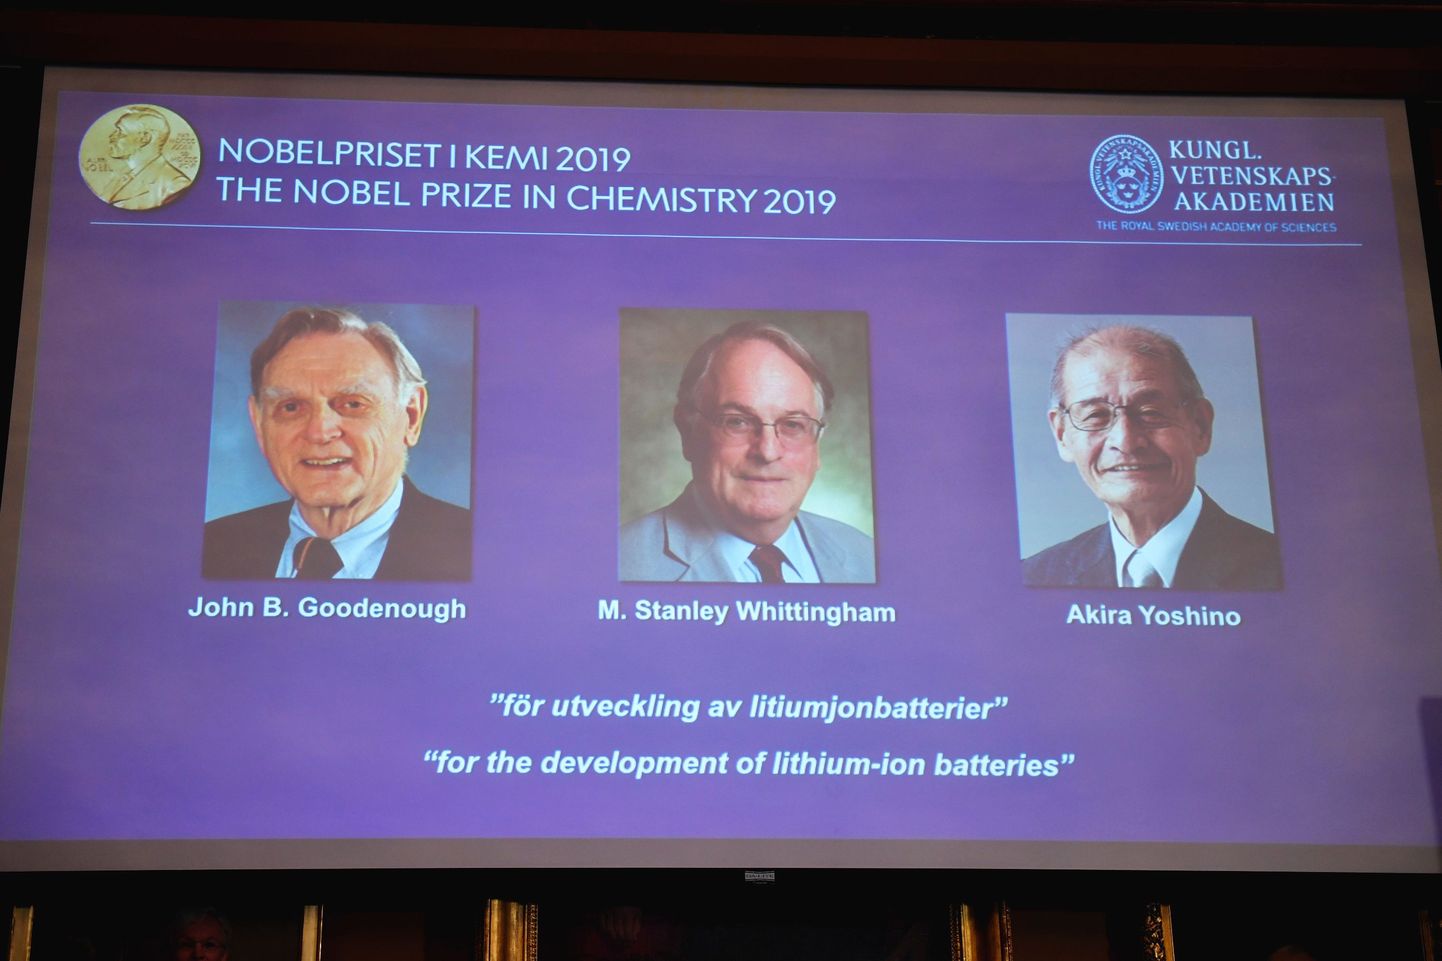 Нобелевская премия по химии.